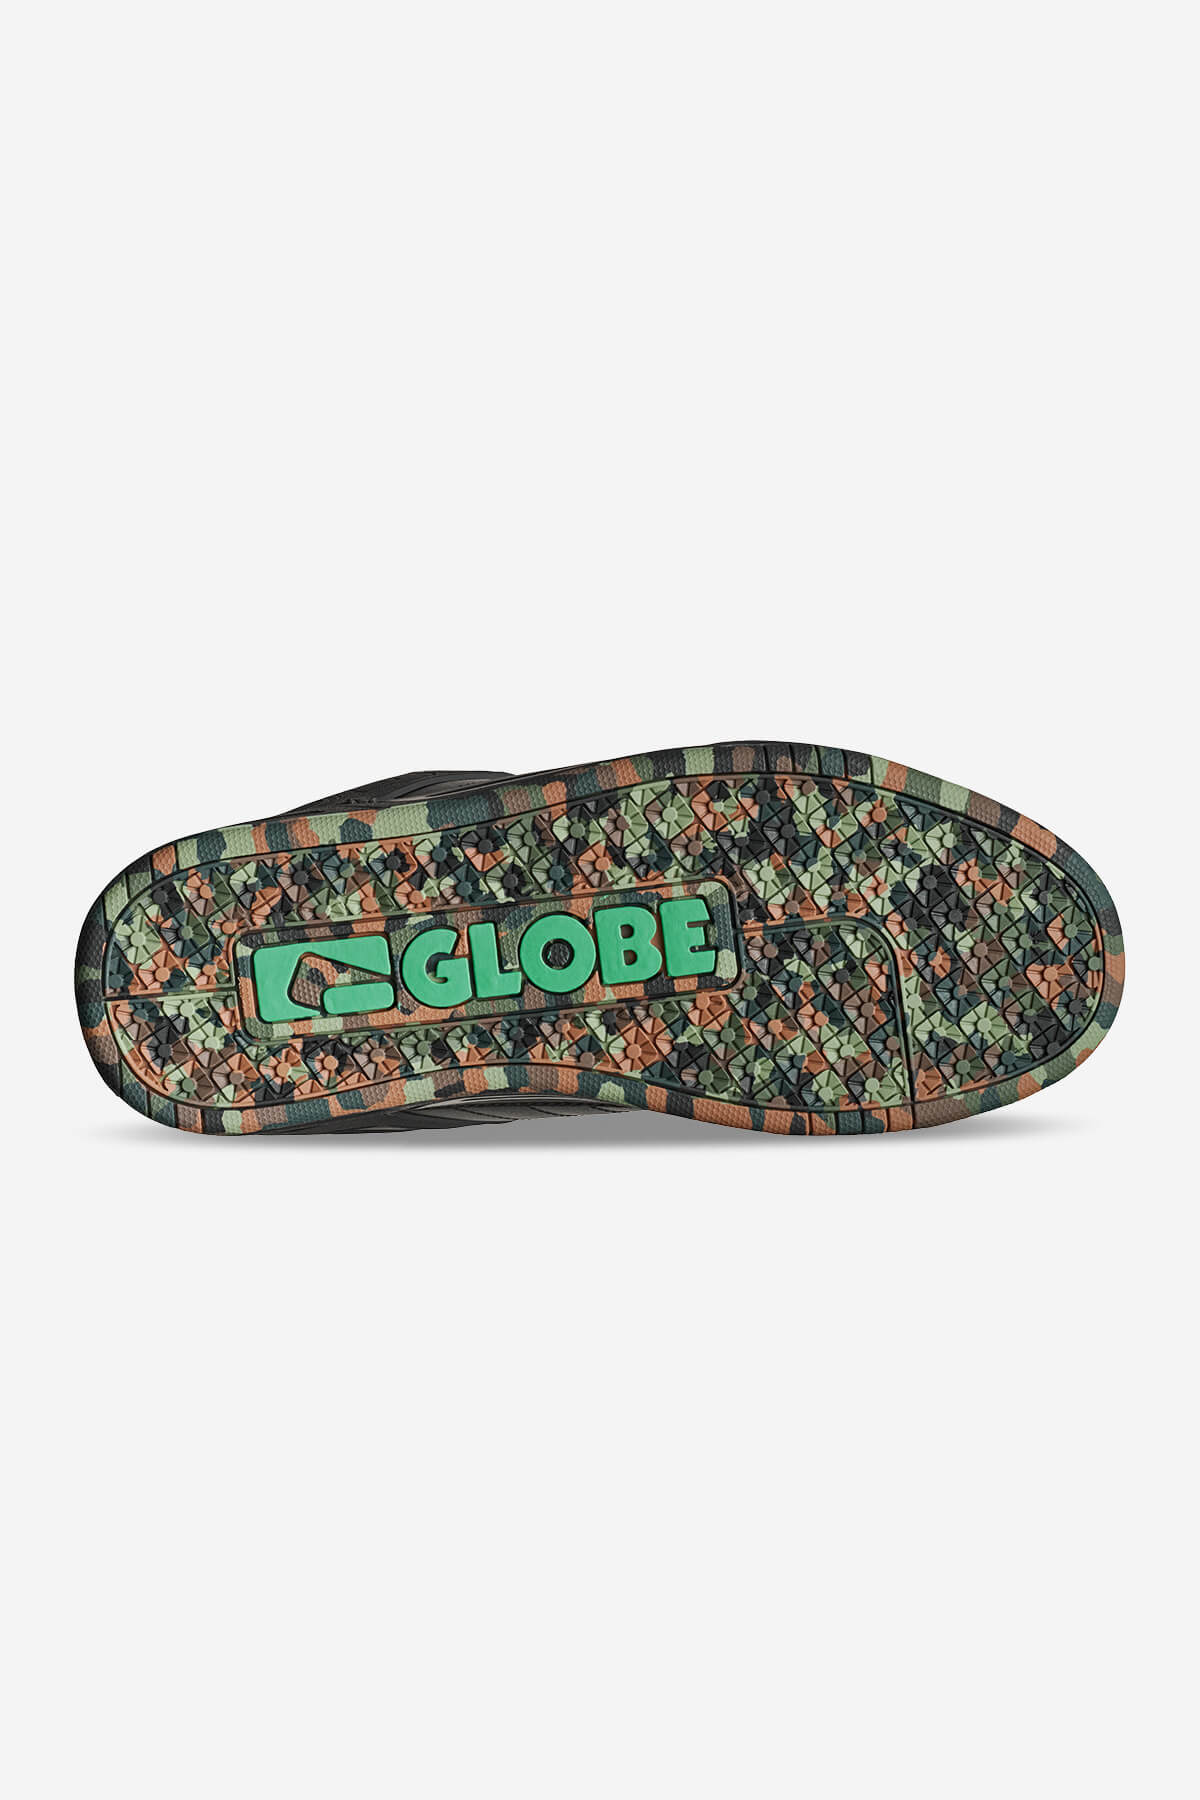 Globe - Tilt - Black/Green/Mosaic - skateboard Schoenen